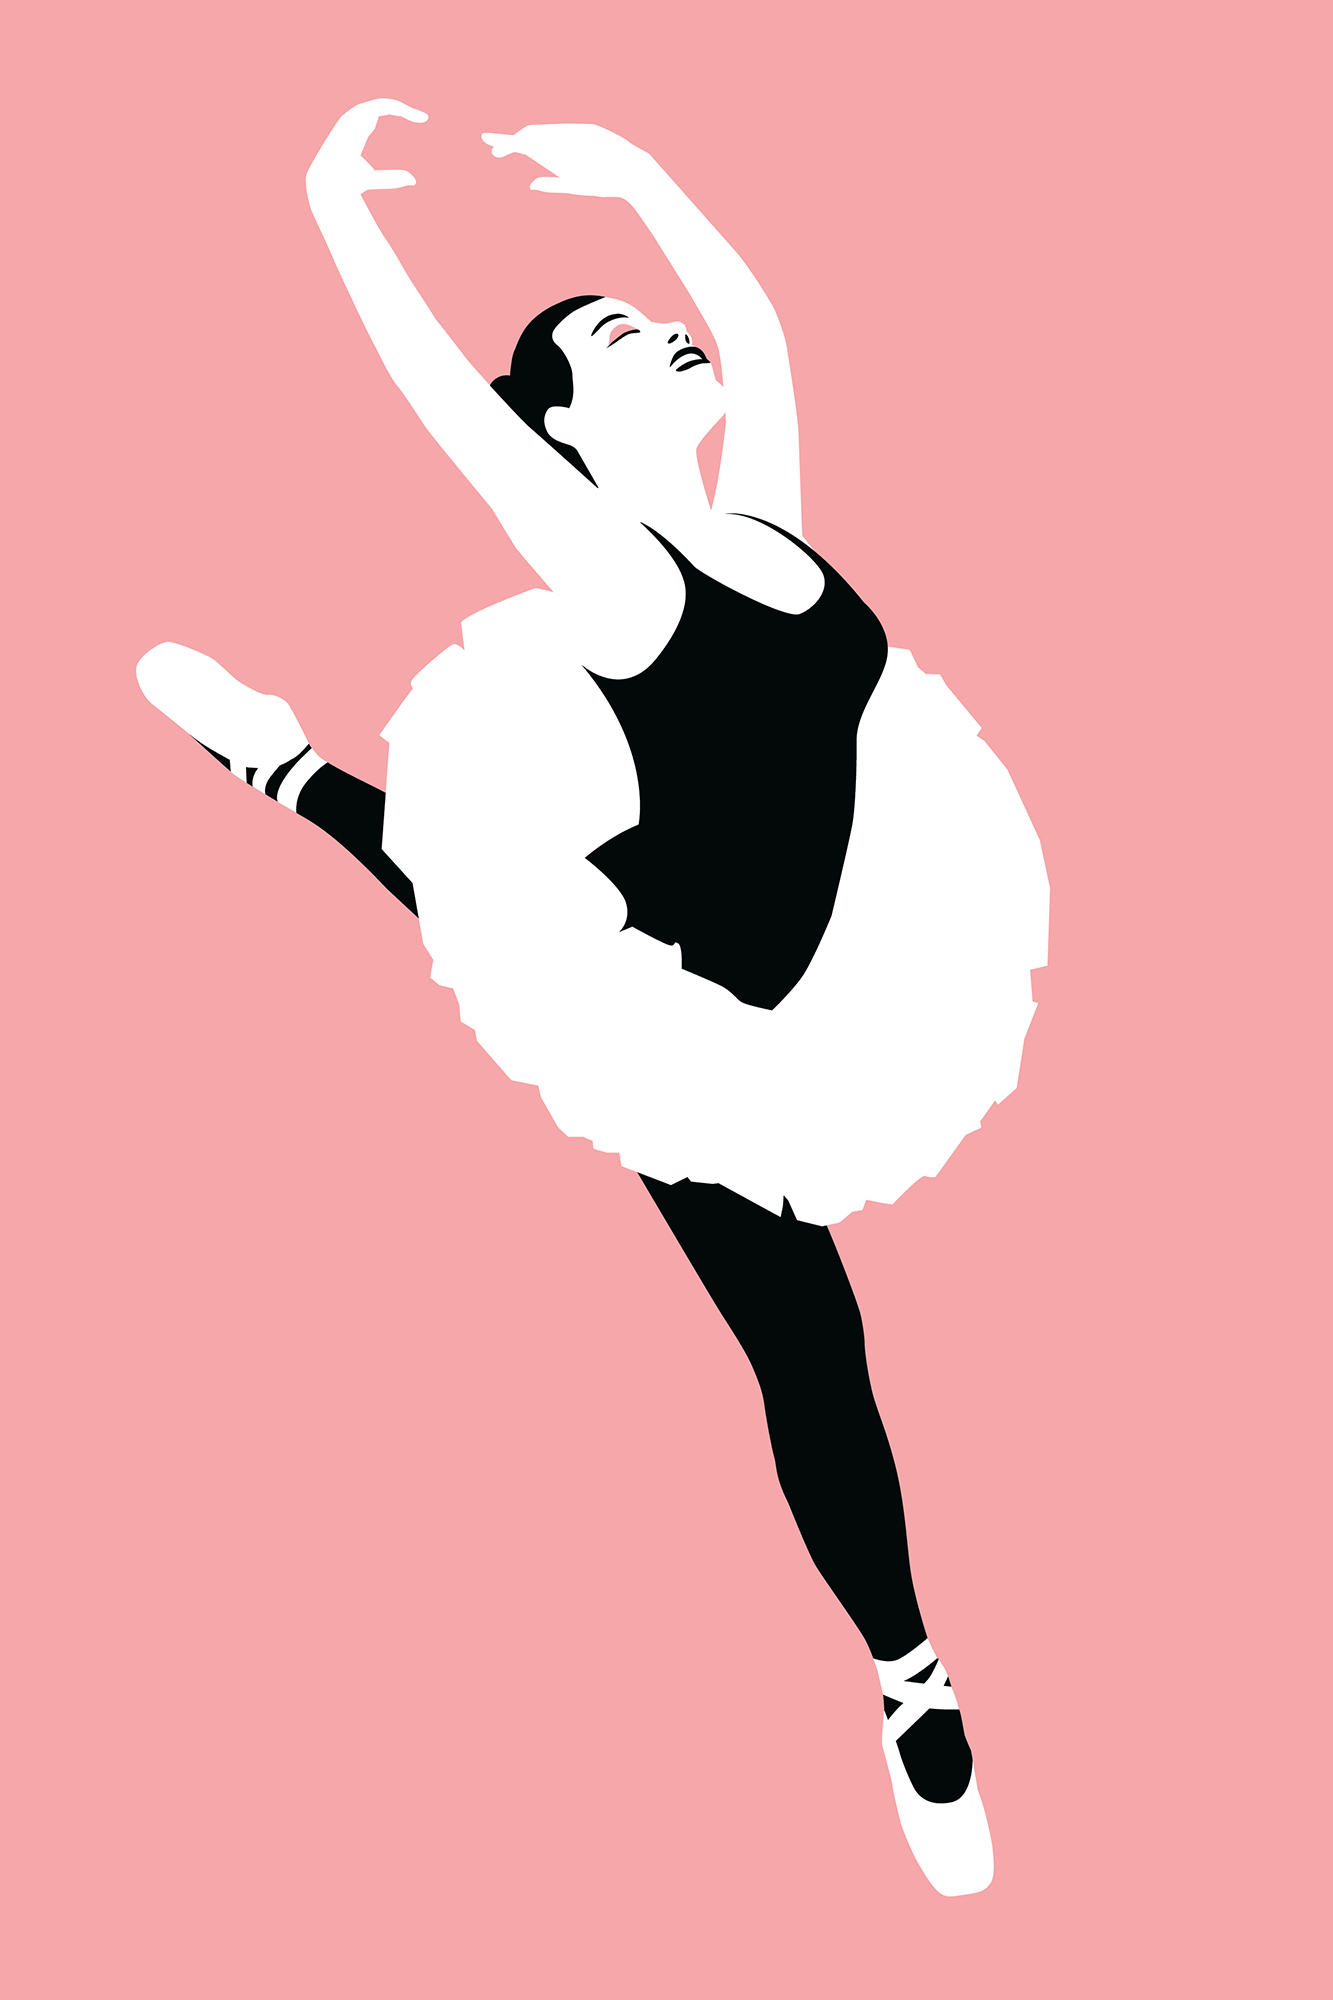 Ballerina Illustration